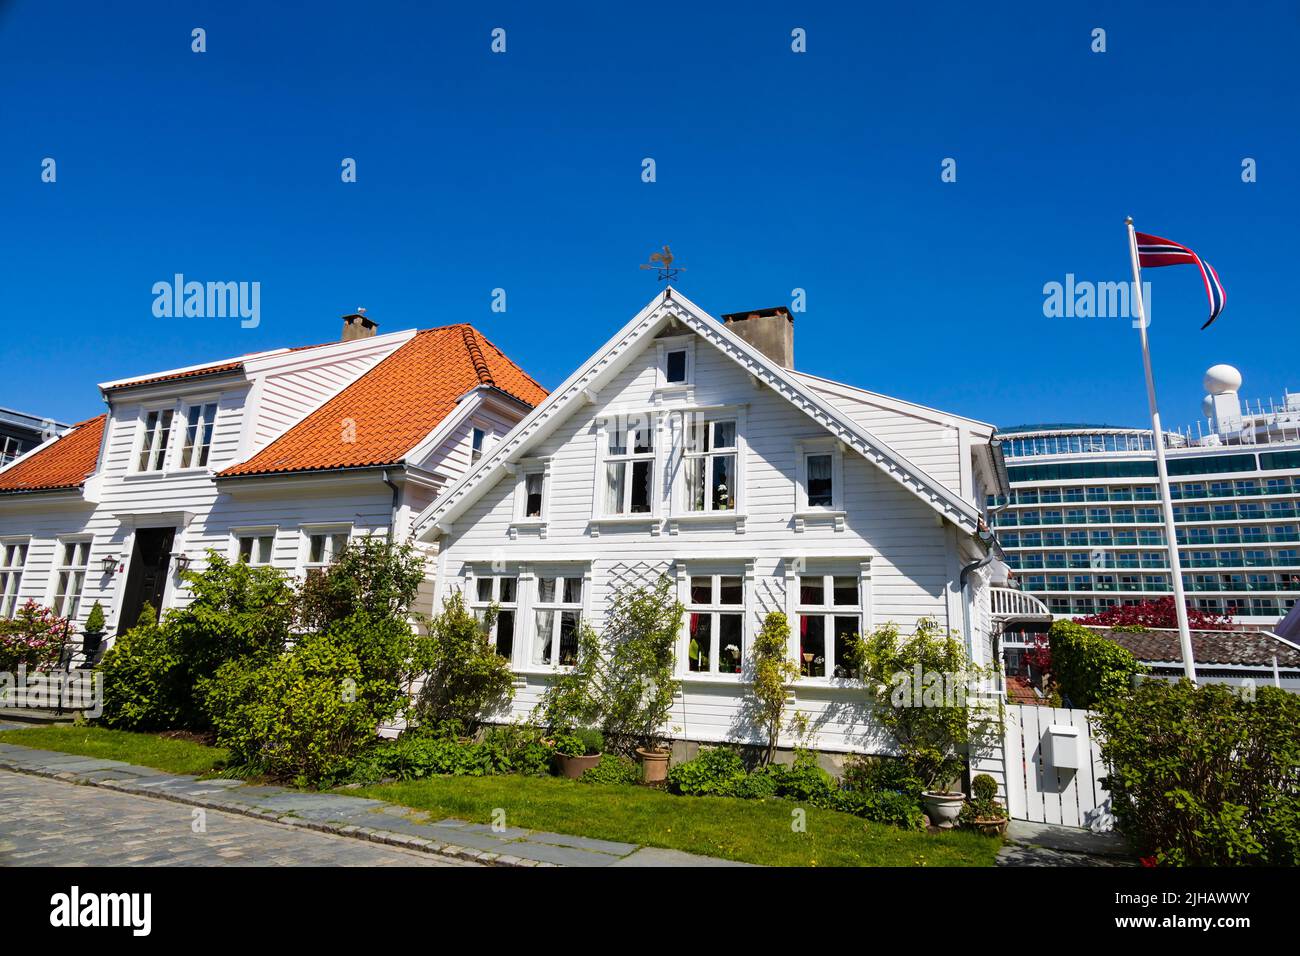 Maisons norvégiennes traditionnelles, blanches, peintes en bois sur Øvre Strandgate, Stavanger, Norvège. Le bateau de croisière P&O, MS Iona, est en arrière-plan. Banque D'Images